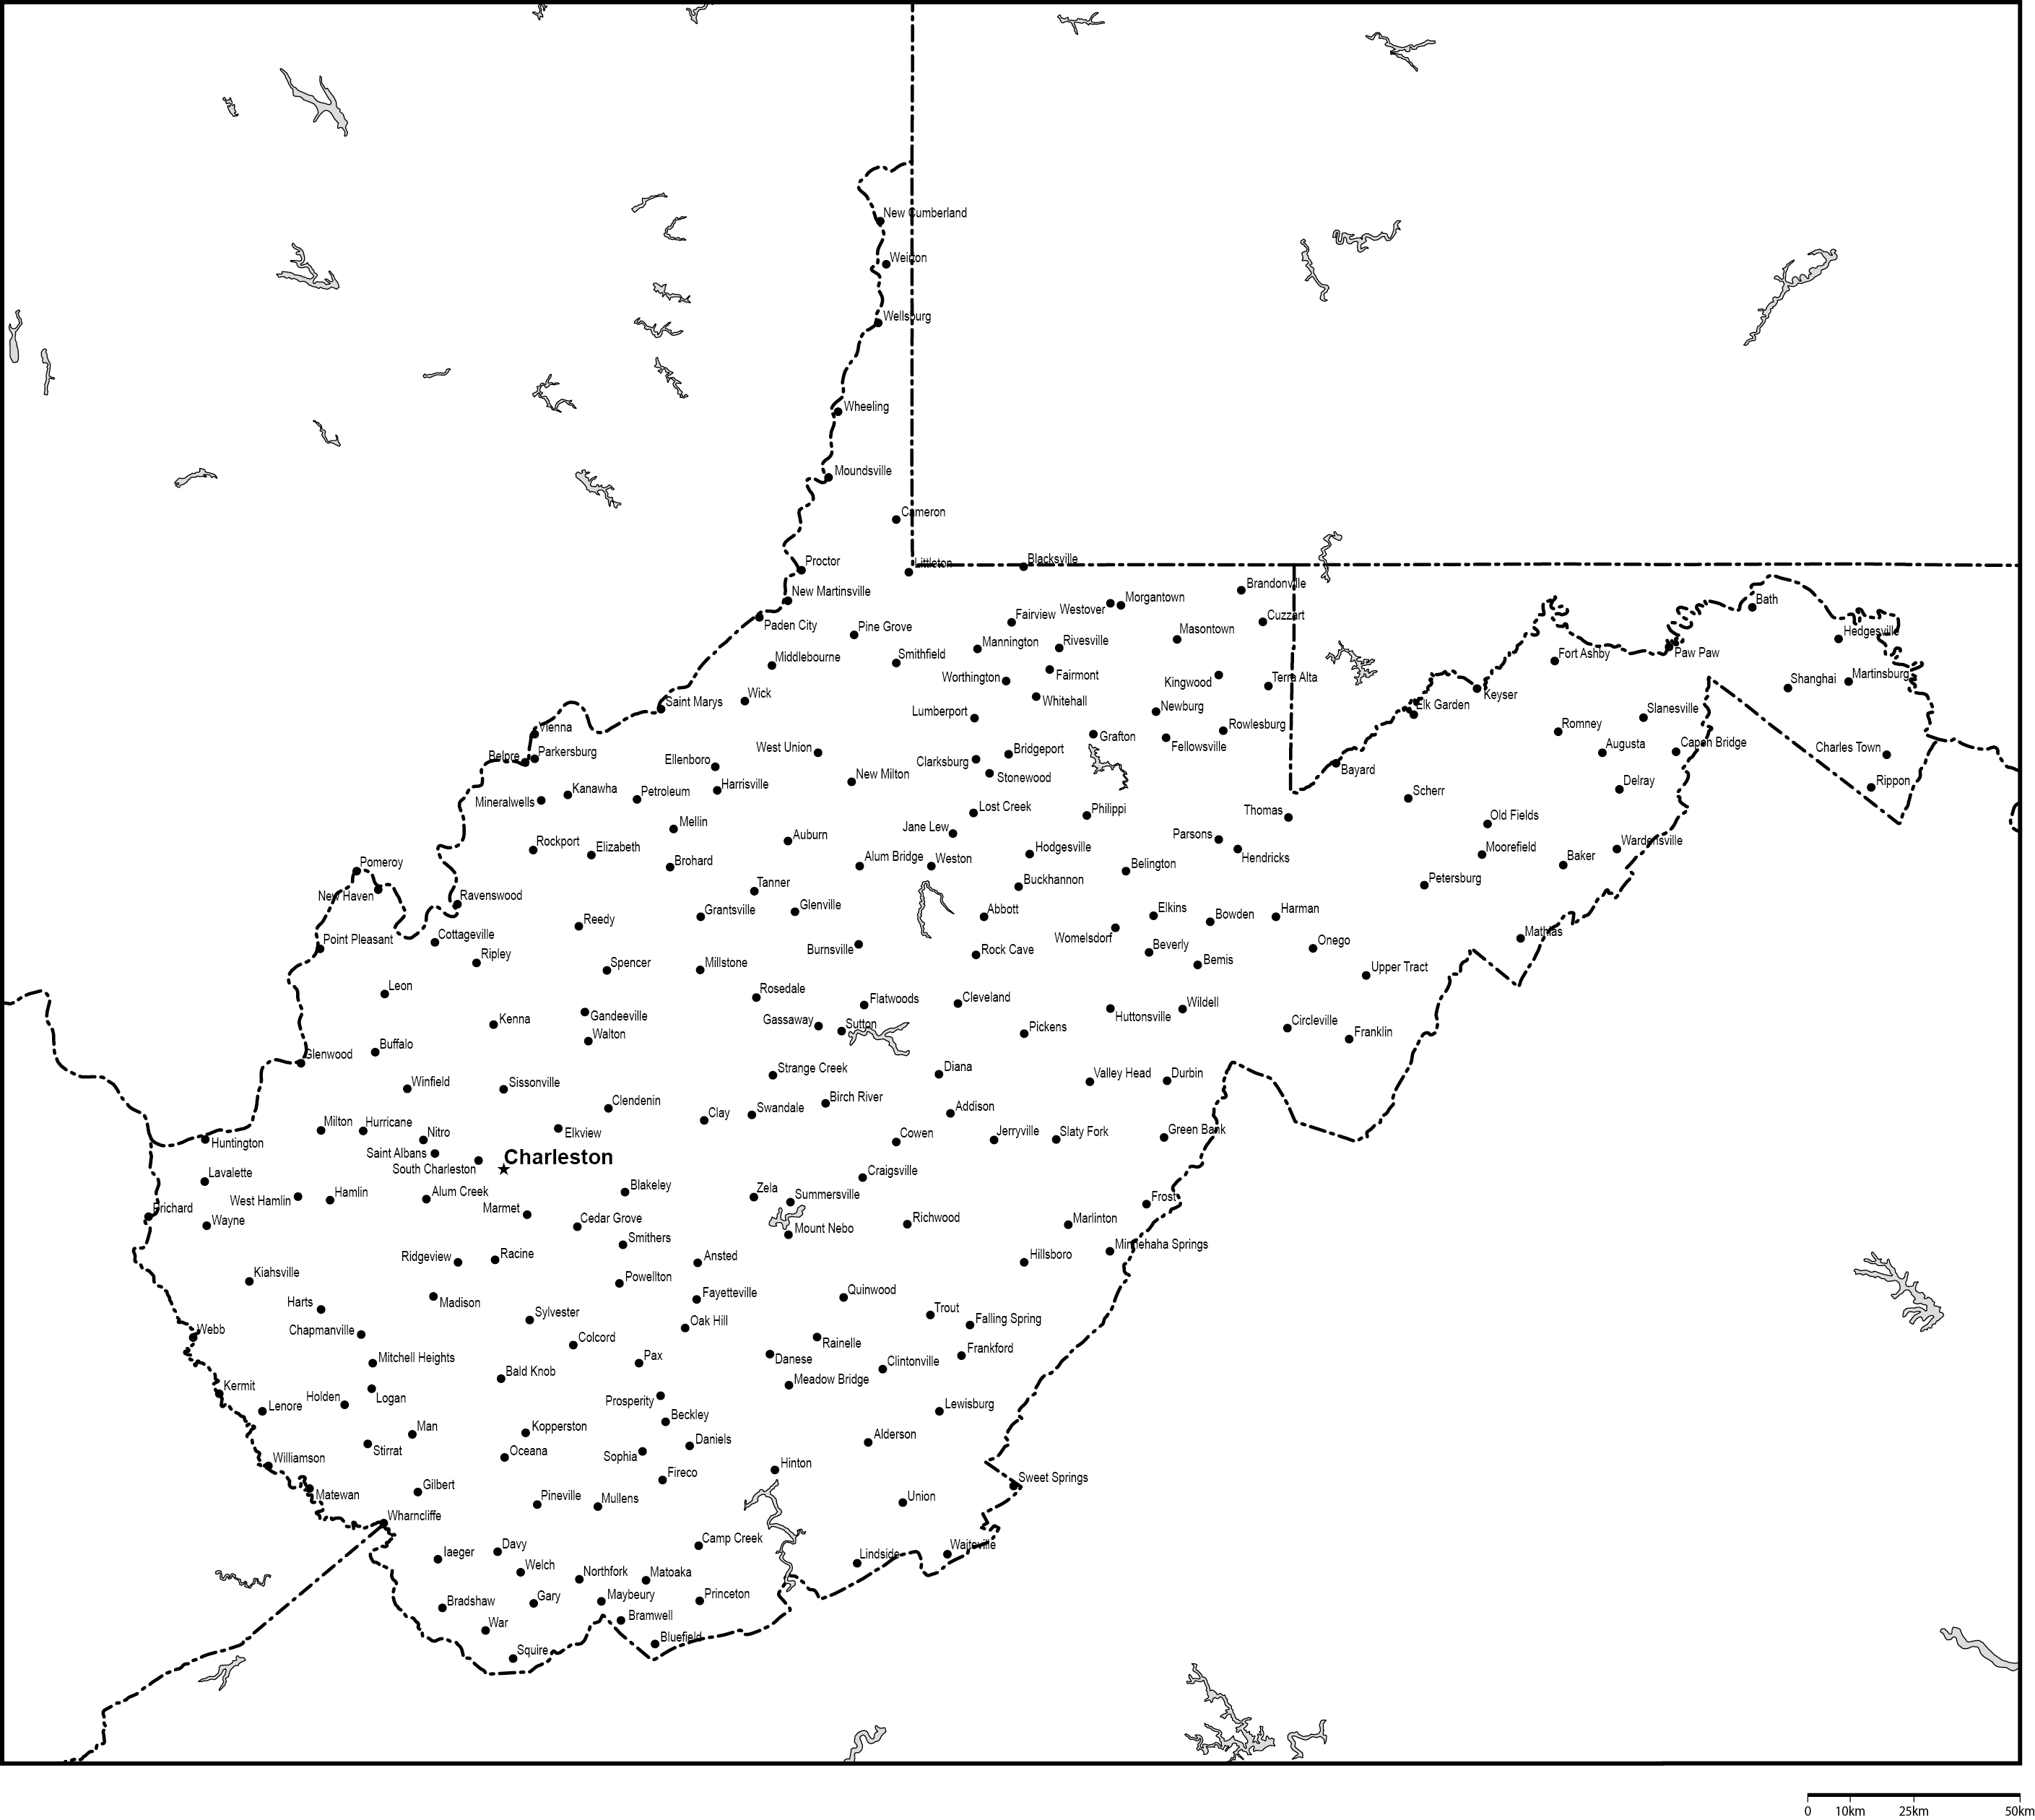 ウェストバージニア州白地図州都・主な都市あり(英語)フリーデータの画像